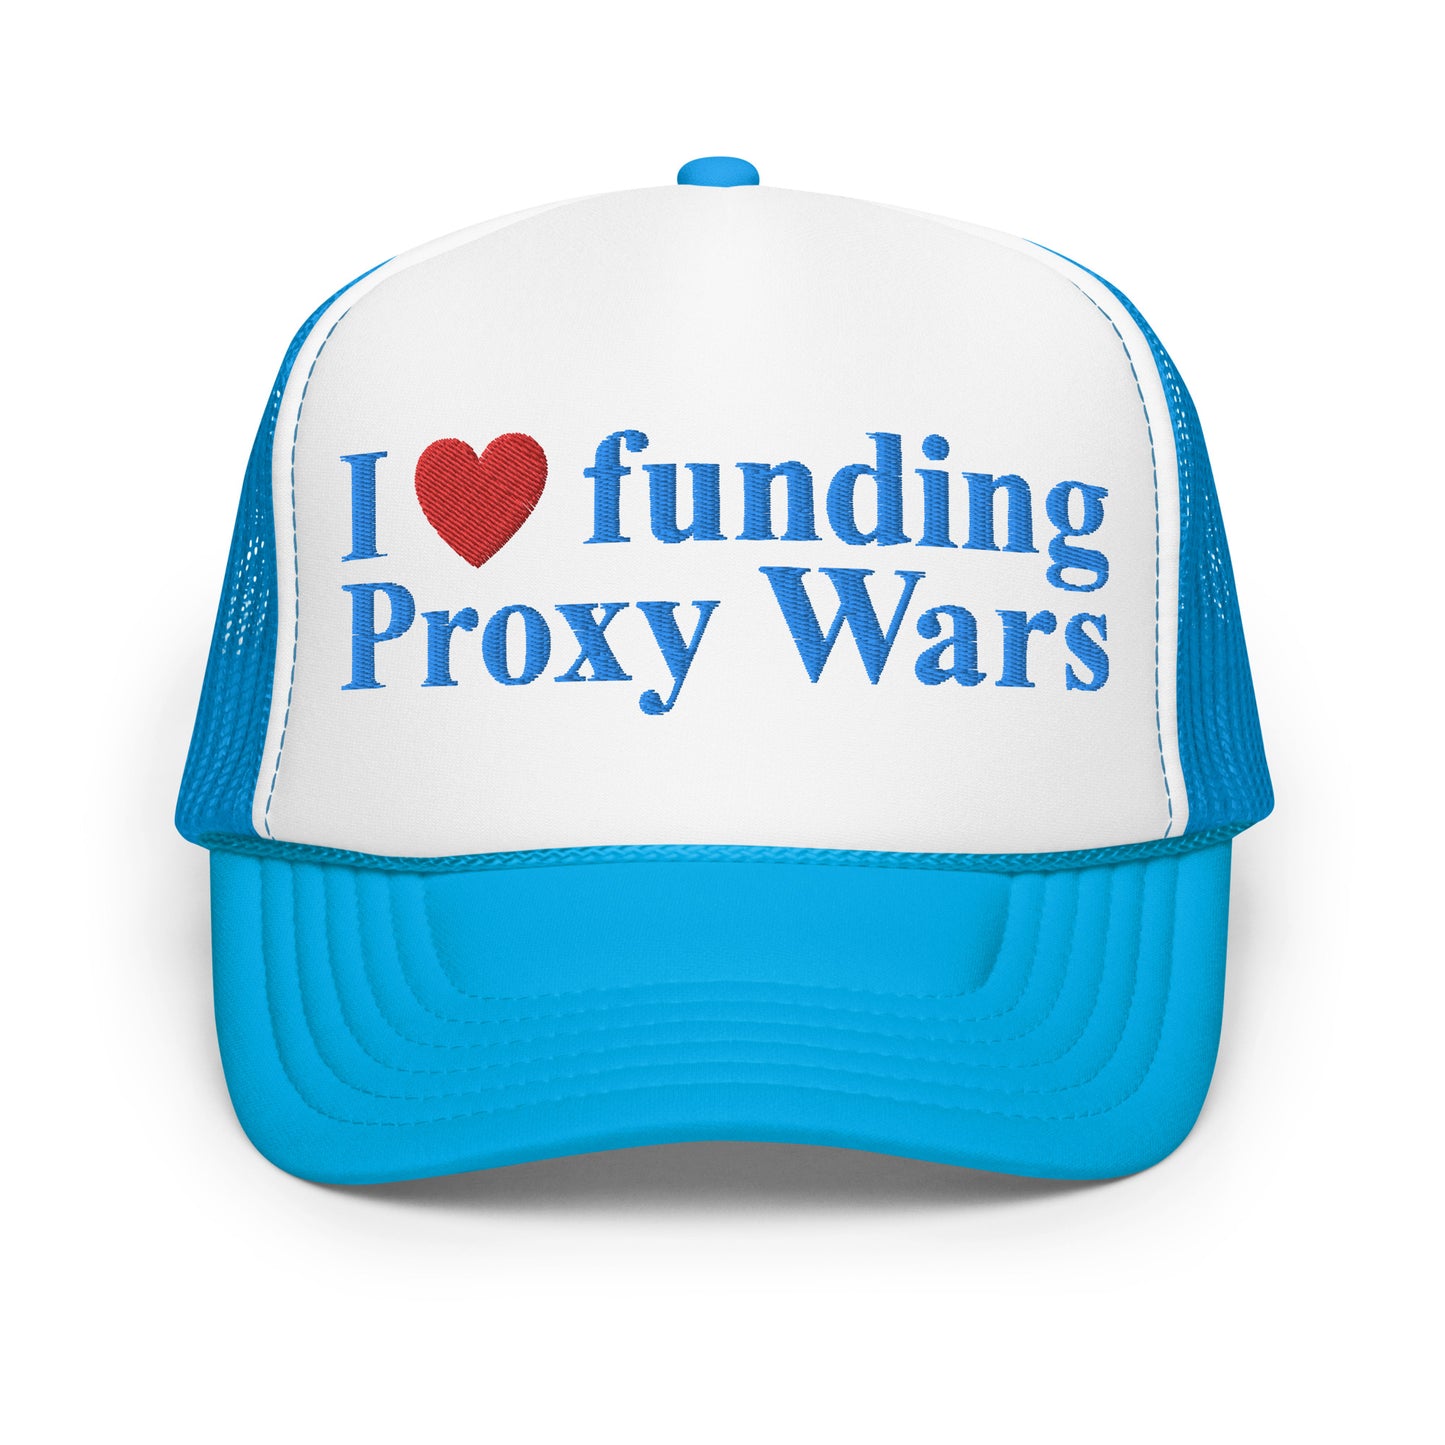 I love funding Proxy Wars Foam Trucker Hat